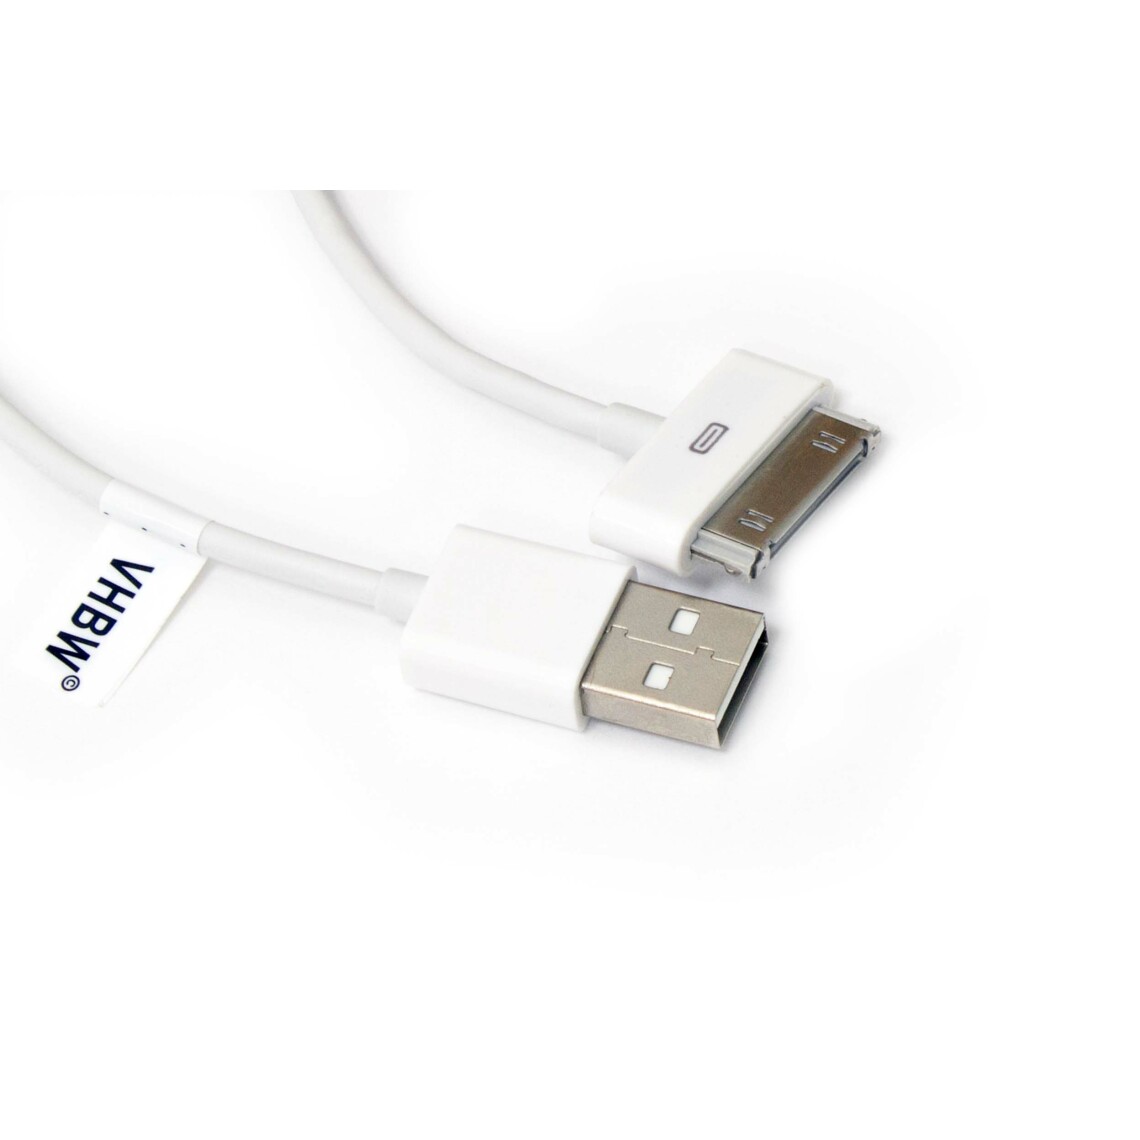 Vhbw - vhbw câble de données USB (type A sur iPod) compatible avec Apple iPod 5 Gen. (Video) - A1136 - 30Gb lecteur MP3 - blanc - Alimentation modulaire